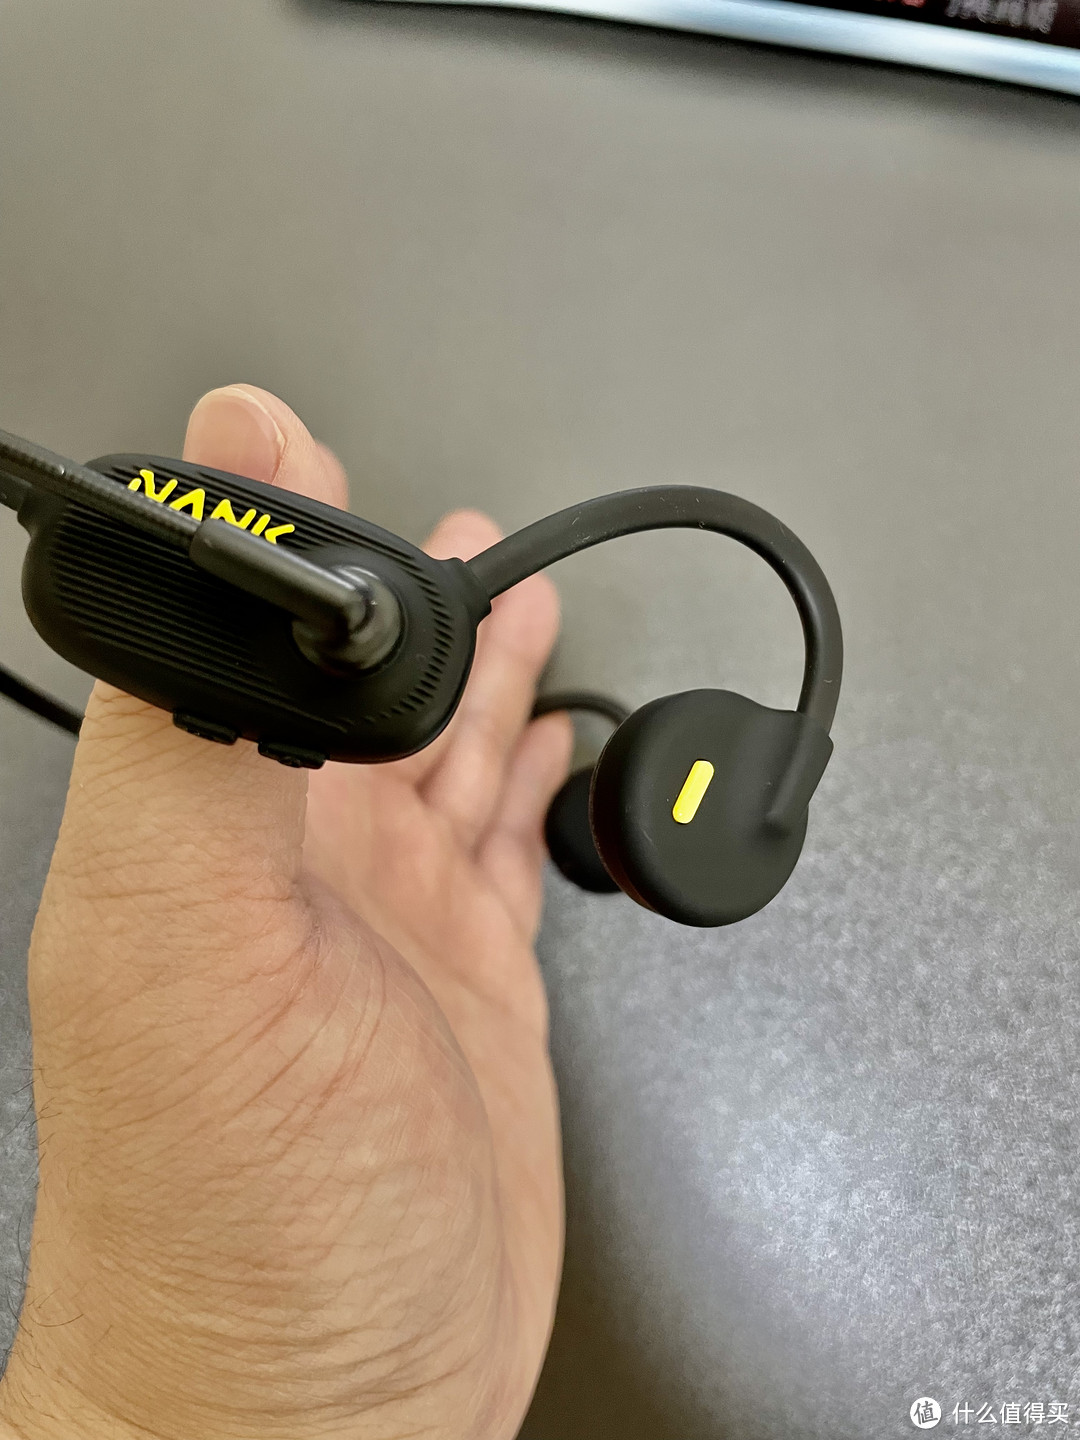 新一代通话技术提升 补齐骨传导耳机短板 NANK Runner Comm 带麦商务耳机 